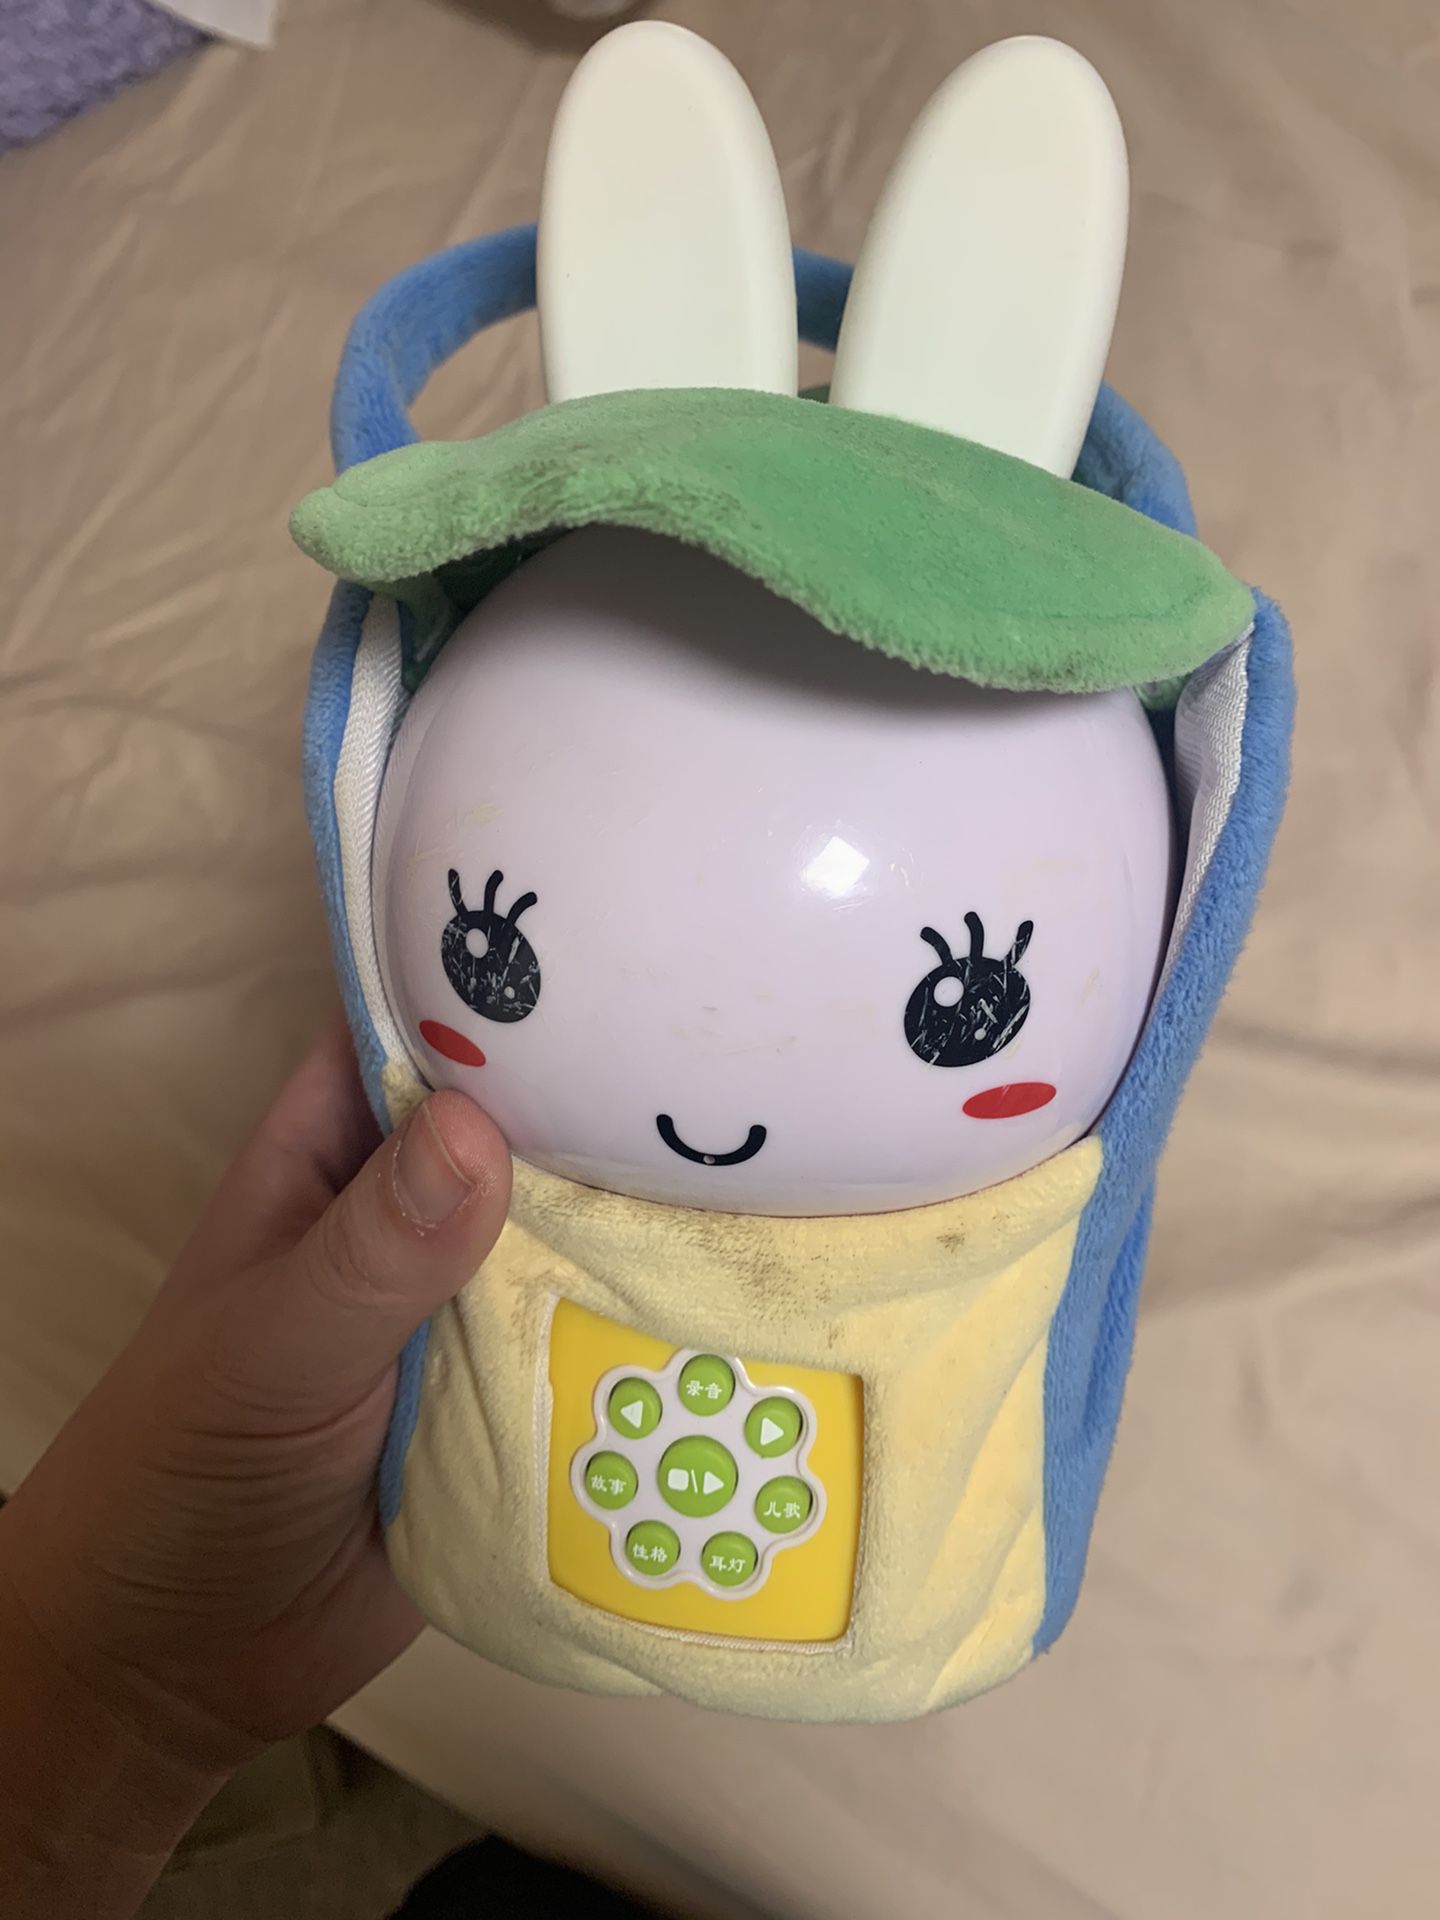 火火兔 Chinese Kid Electric Toy Kid Speaker With 100+ Songs